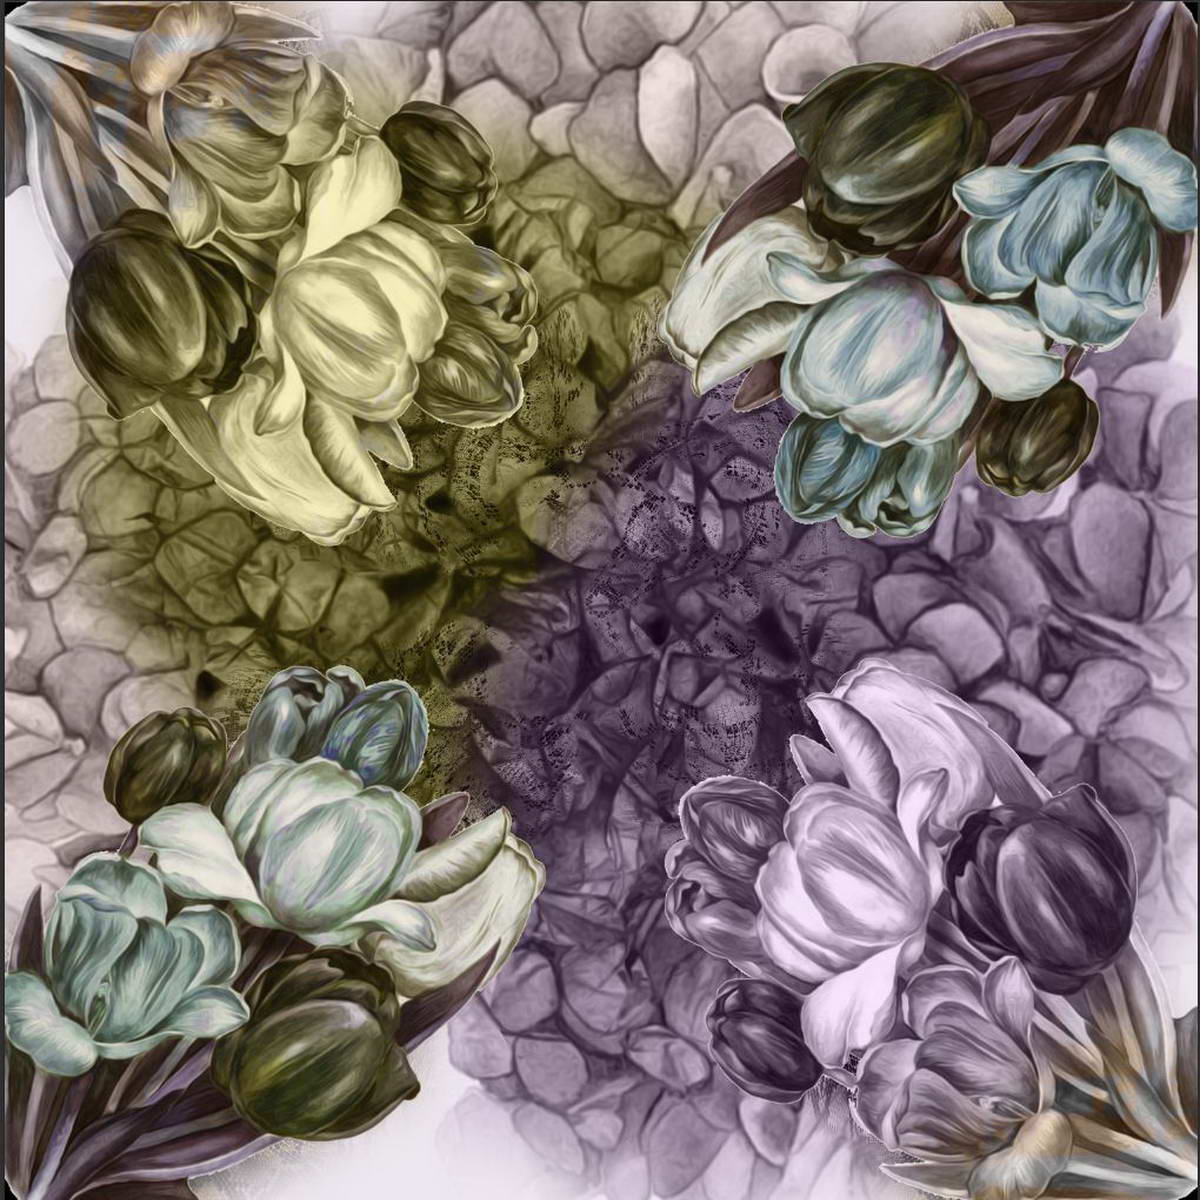 Платок Venera, цвет: сиреневый, оливковый, серый. 3902627-14. Размер 90 см х 90 см